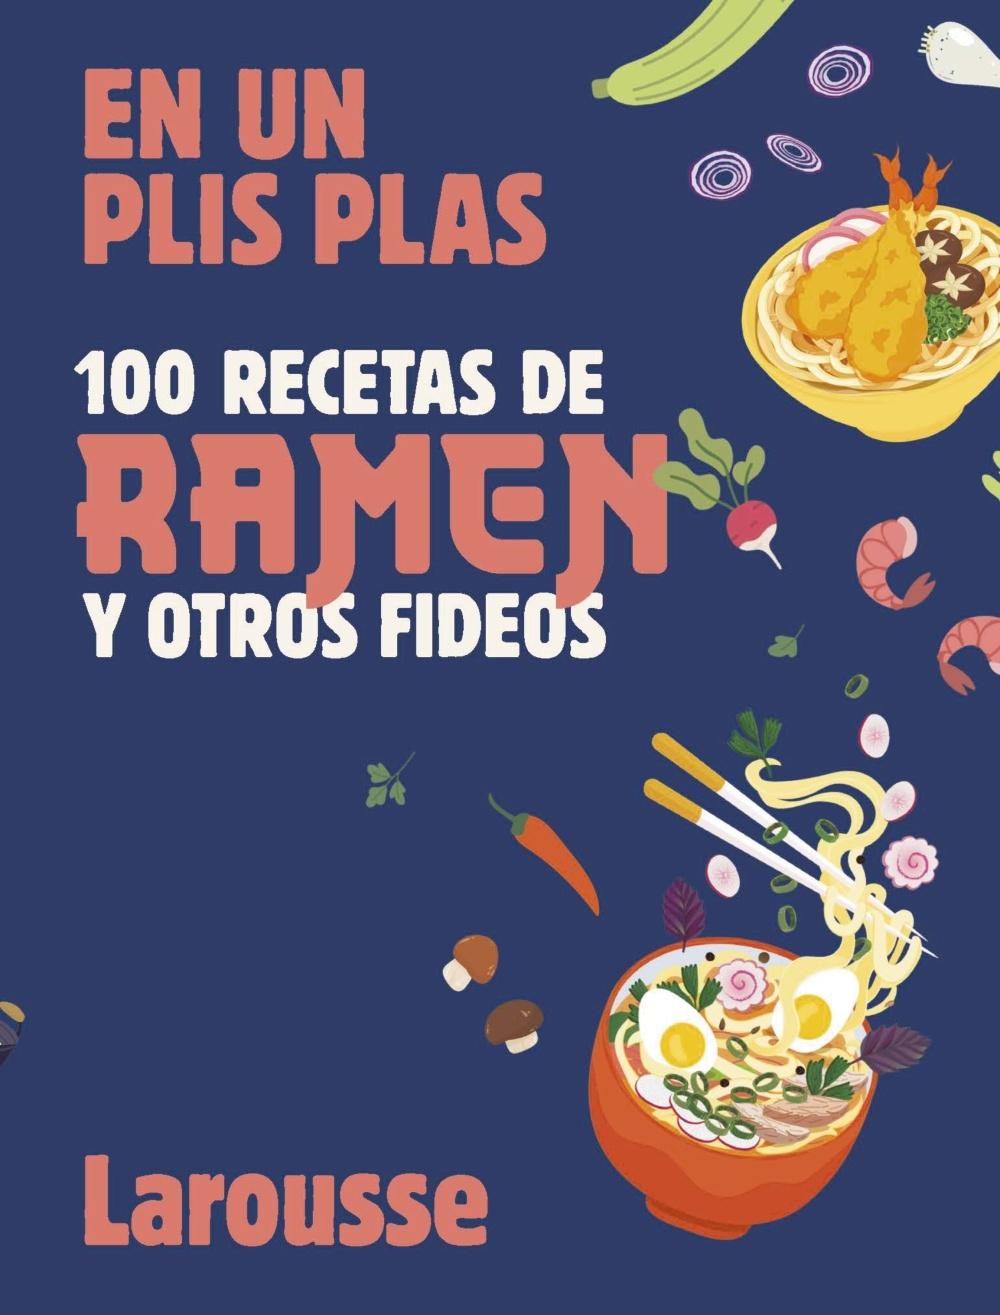 100 Recetas de Ramen y Otros Fideos "En un Plis Plas". 